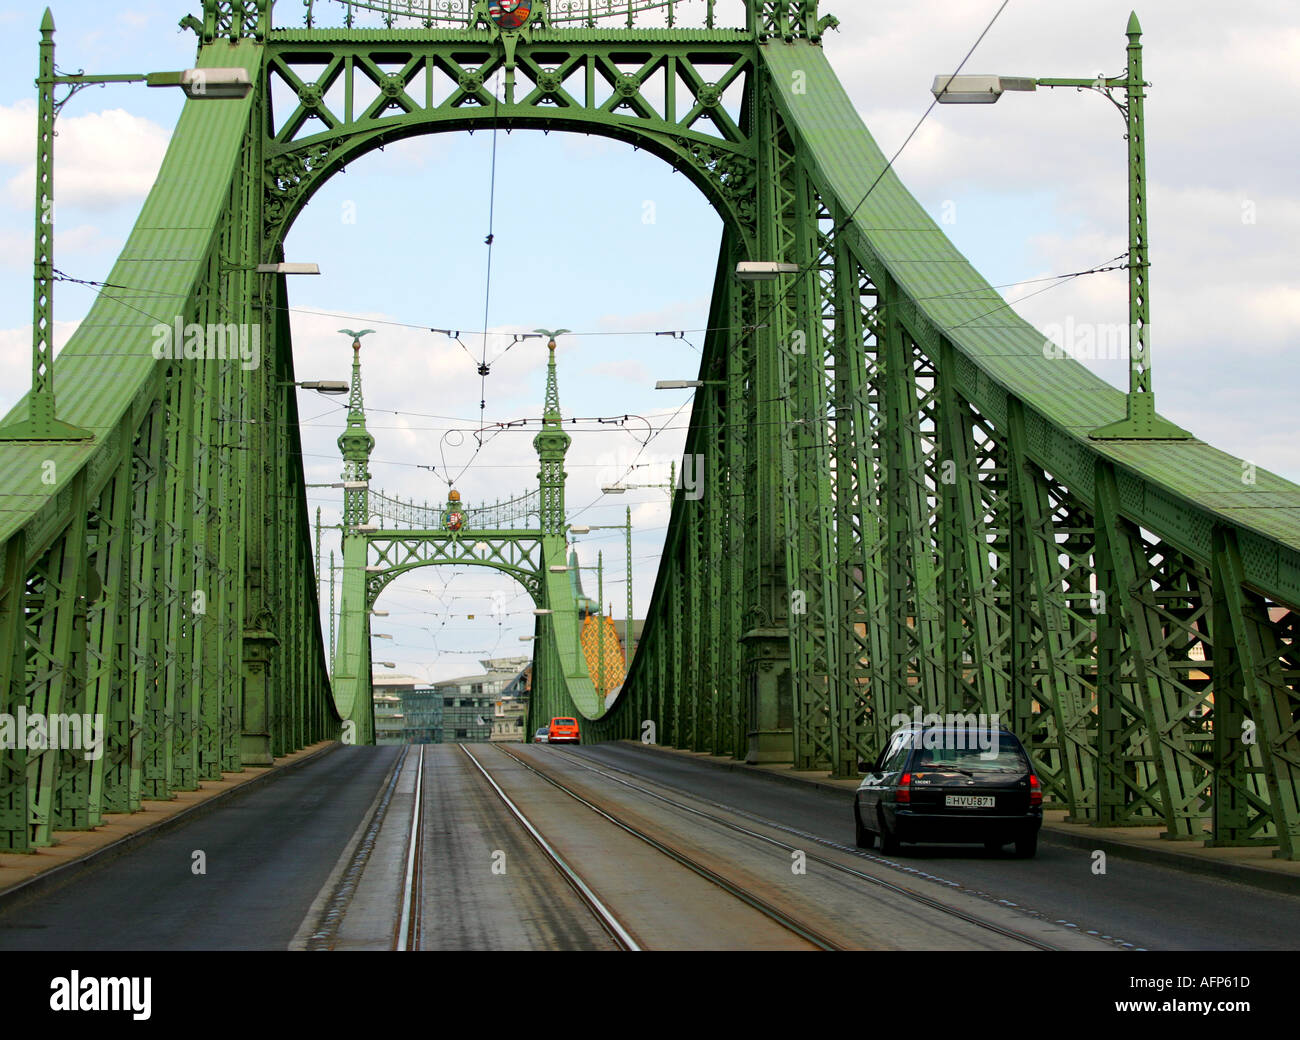 The Bridge of Freedom Hungary Budapest Stock Photo